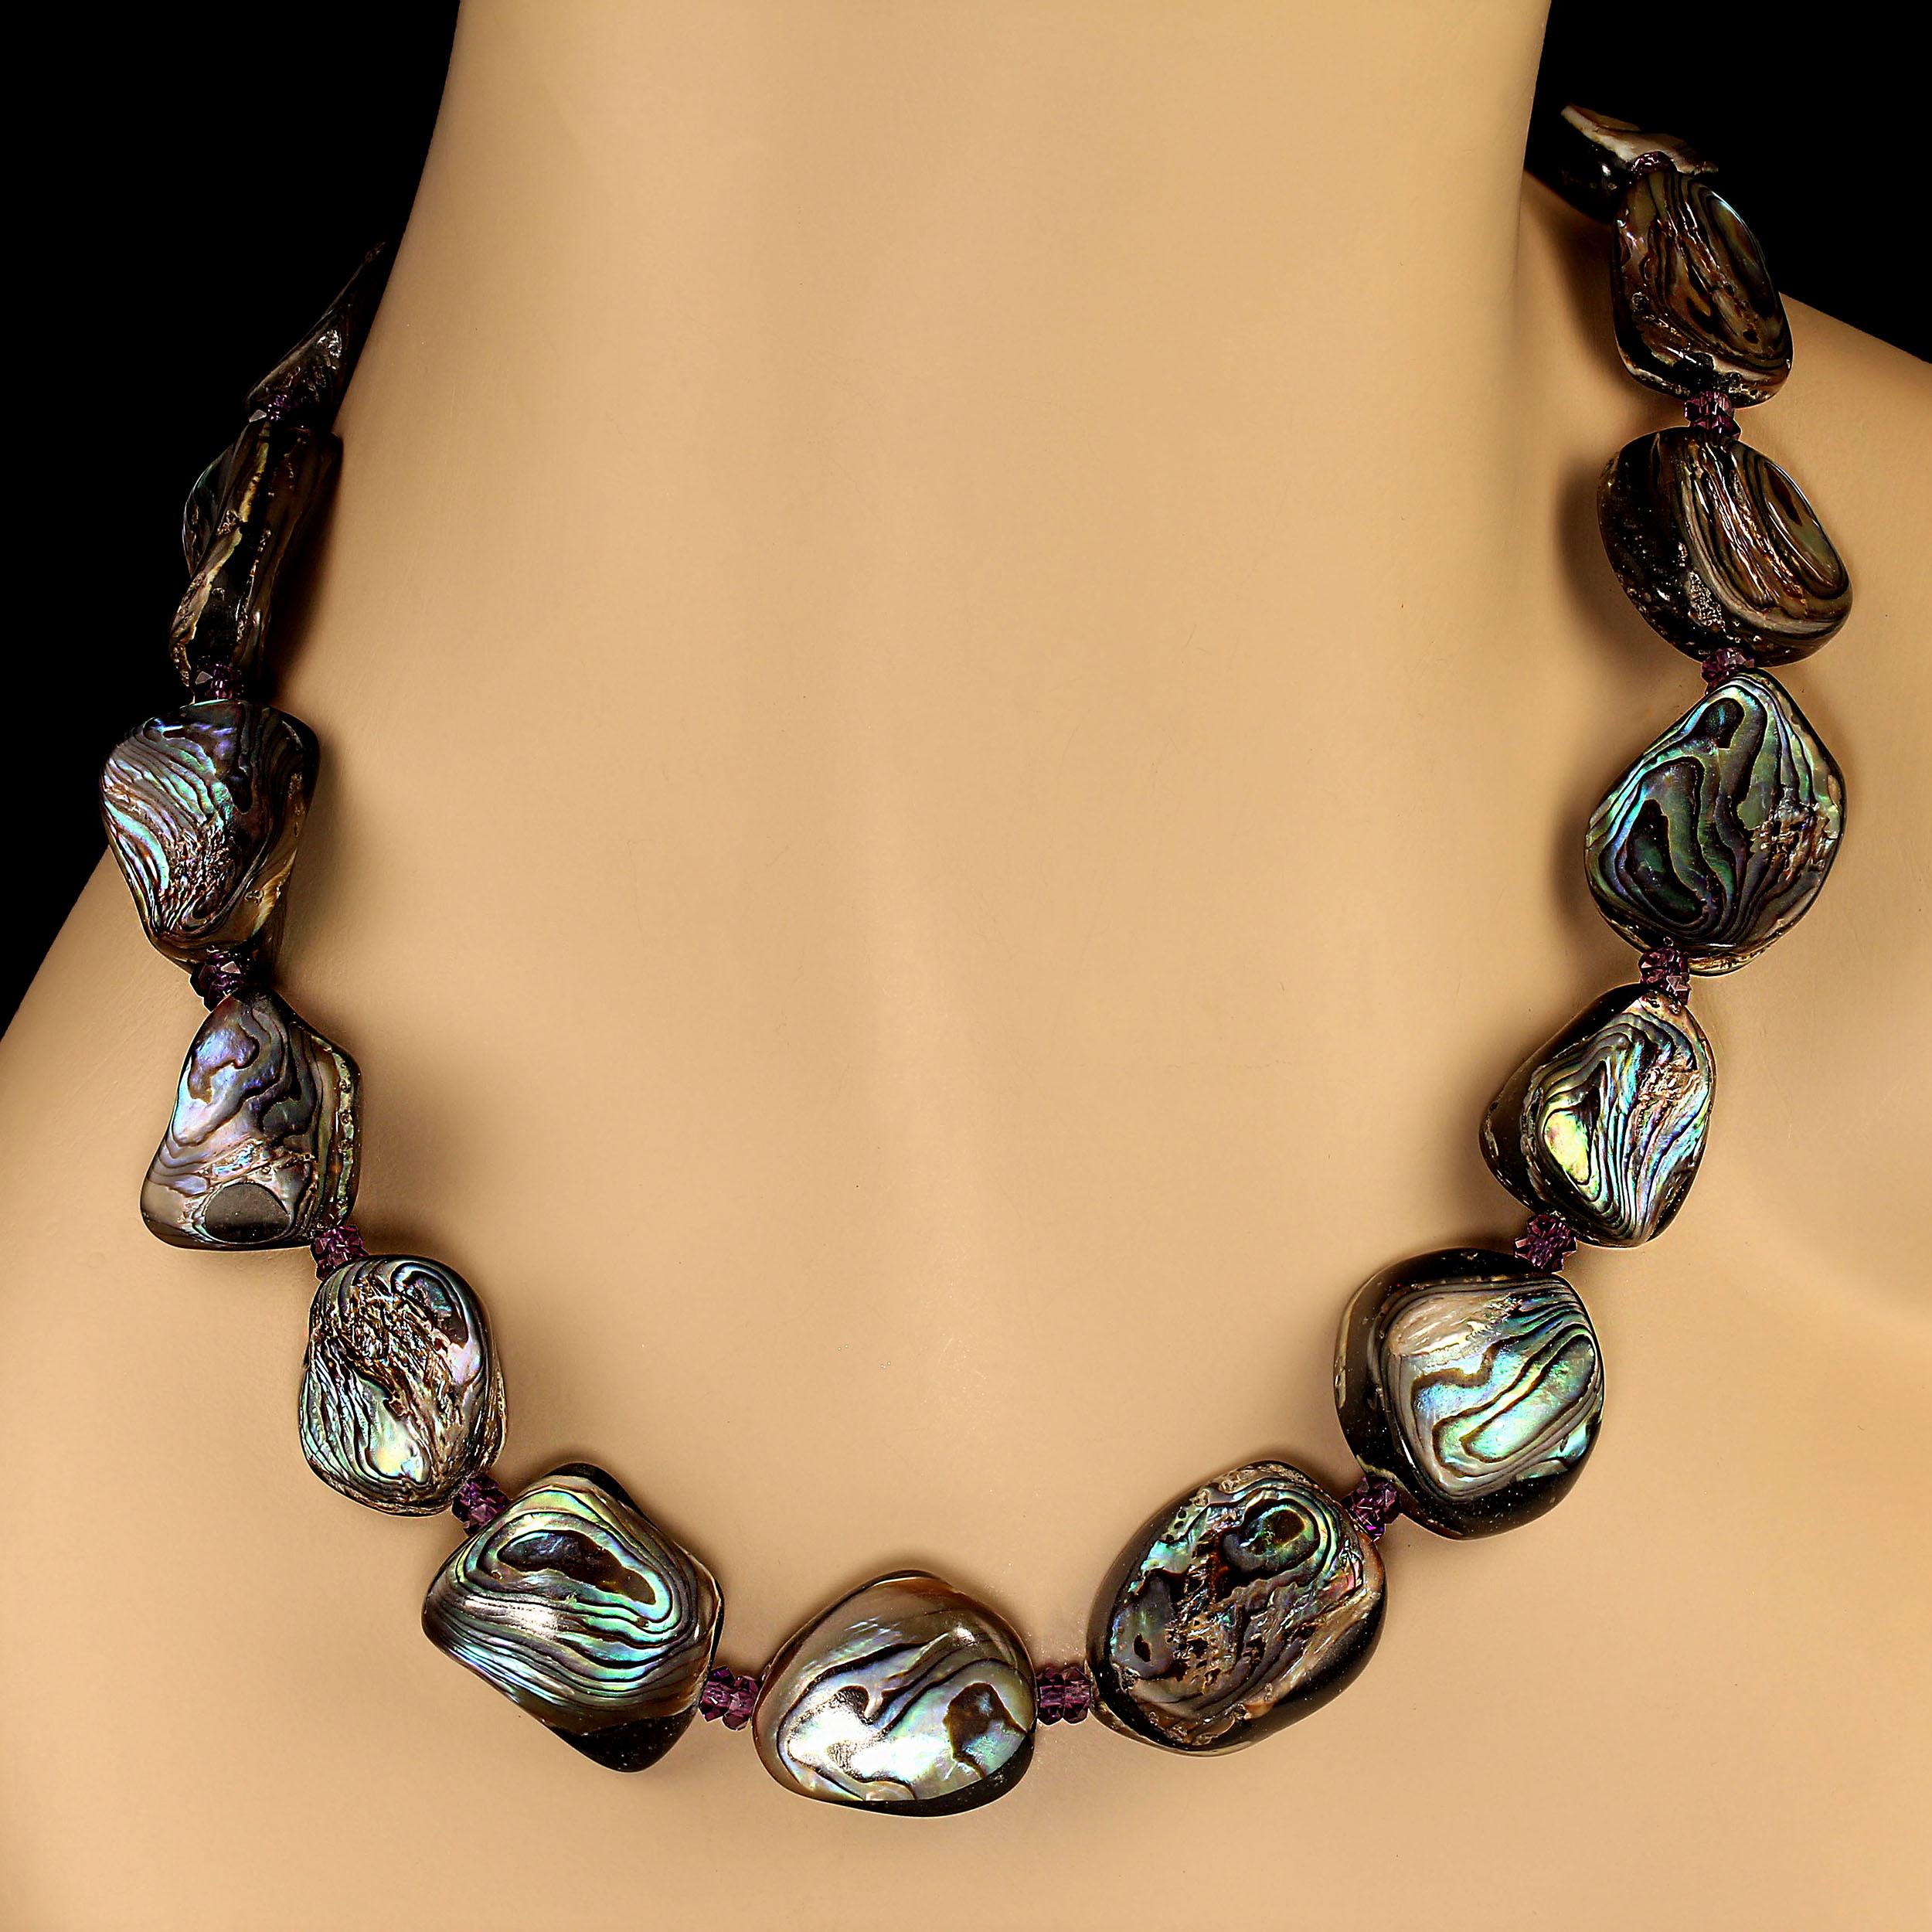 Organische Formen aus doppelseitiger Abalone-Muschel, akzentuiert mit funkelnder Amethyst-Halskette. Diese dramatische 24-Zoll-Halskette ist leicht und sitzt wunderschön am Dekolleté.  Die Abalone-Schale schillert in Grün-, Blau- und Violett-Tönen.